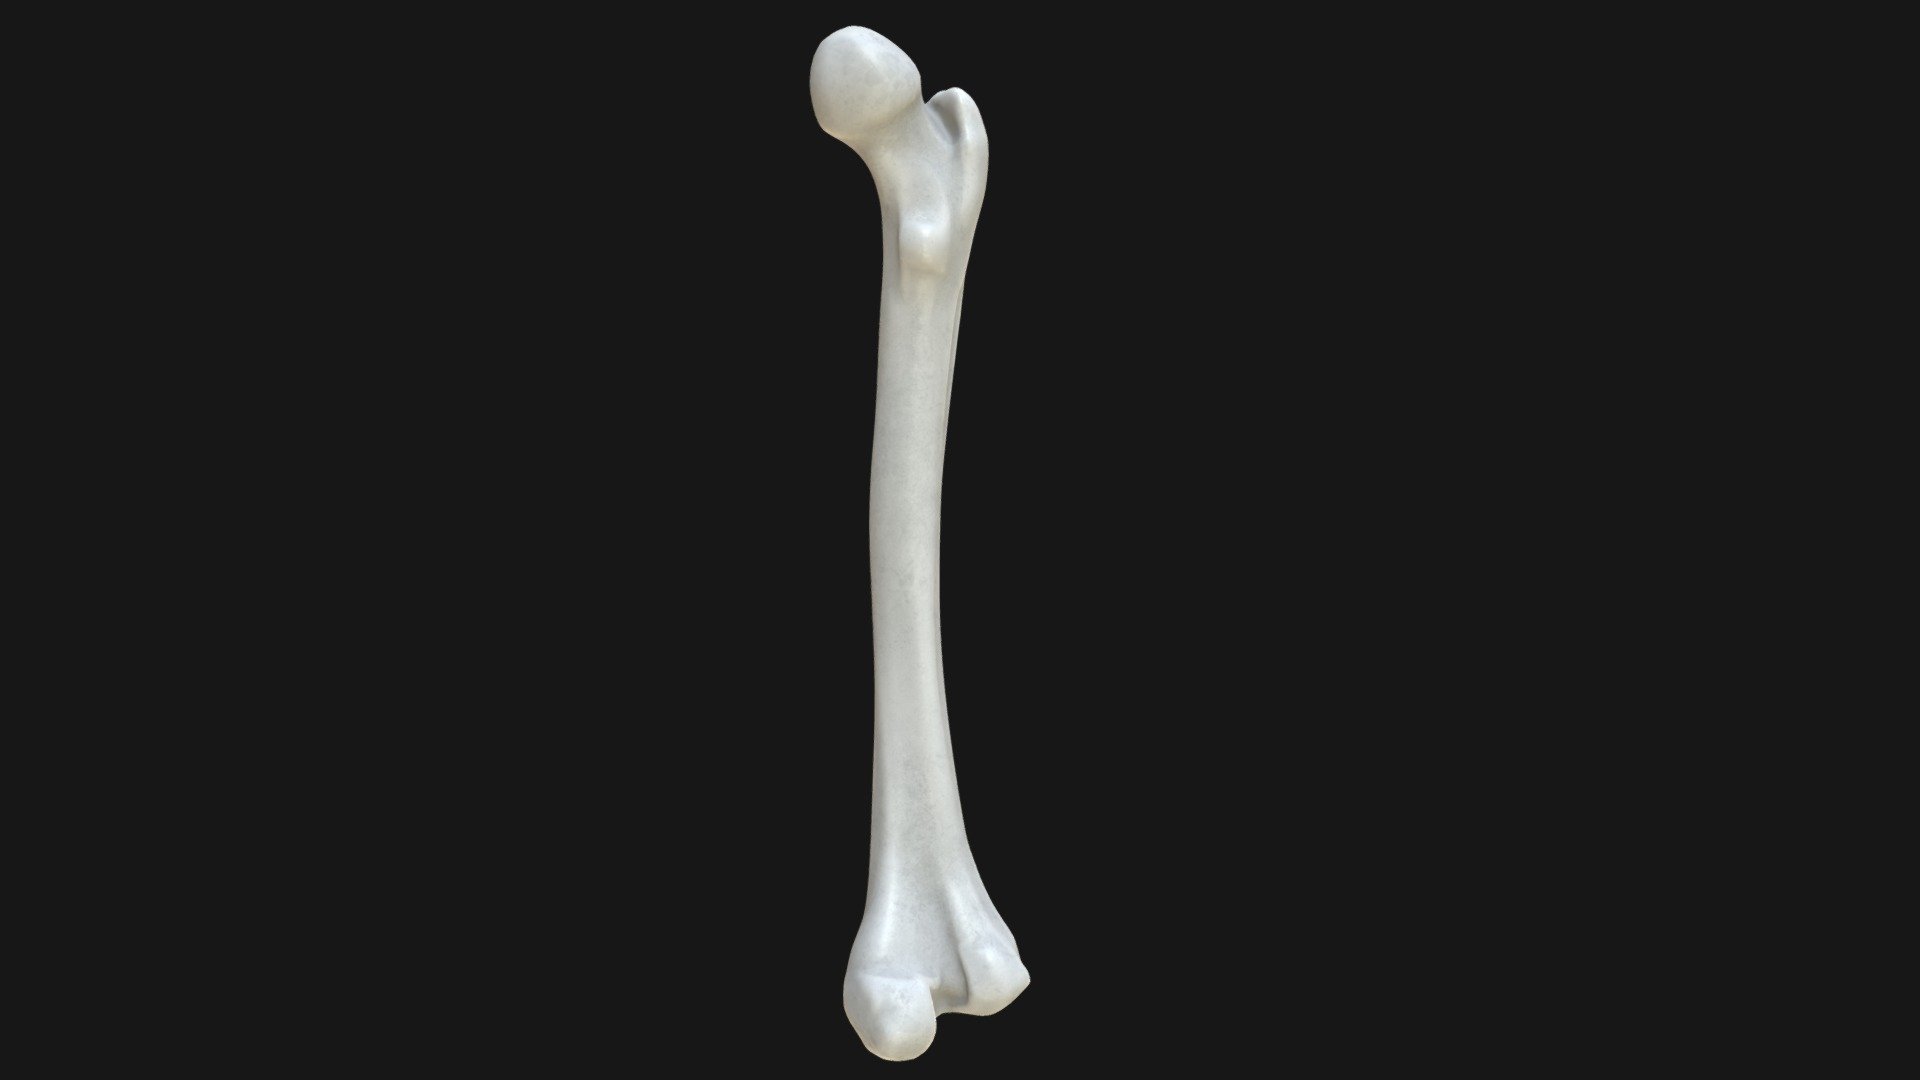 Anatomy - Human femur